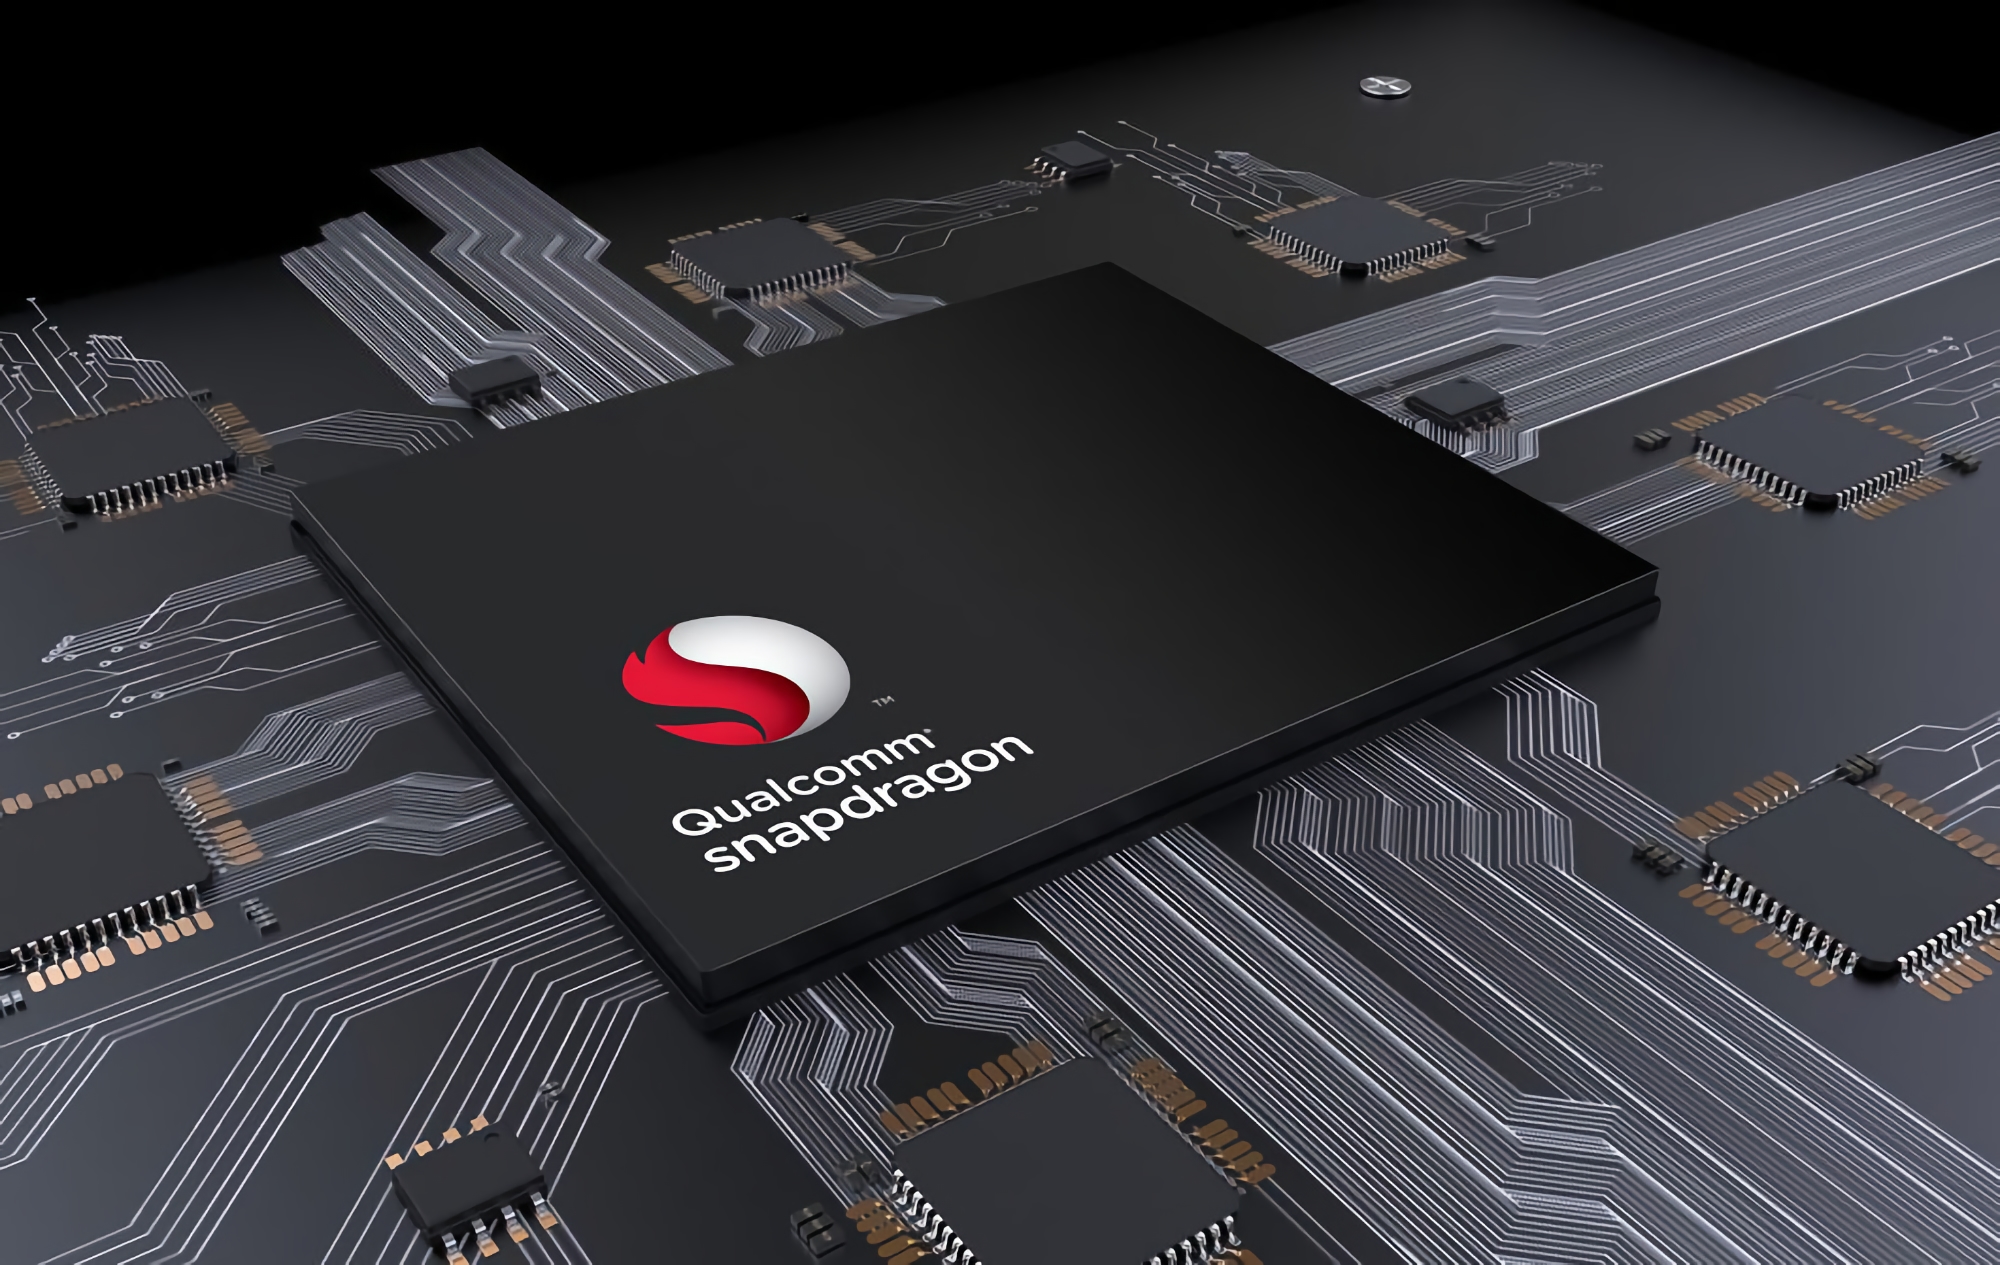 Źródło: Qualcomm zmieni nazwę nowego flagowego układu Snapdragon 898 na Snapdragon 8 gen1